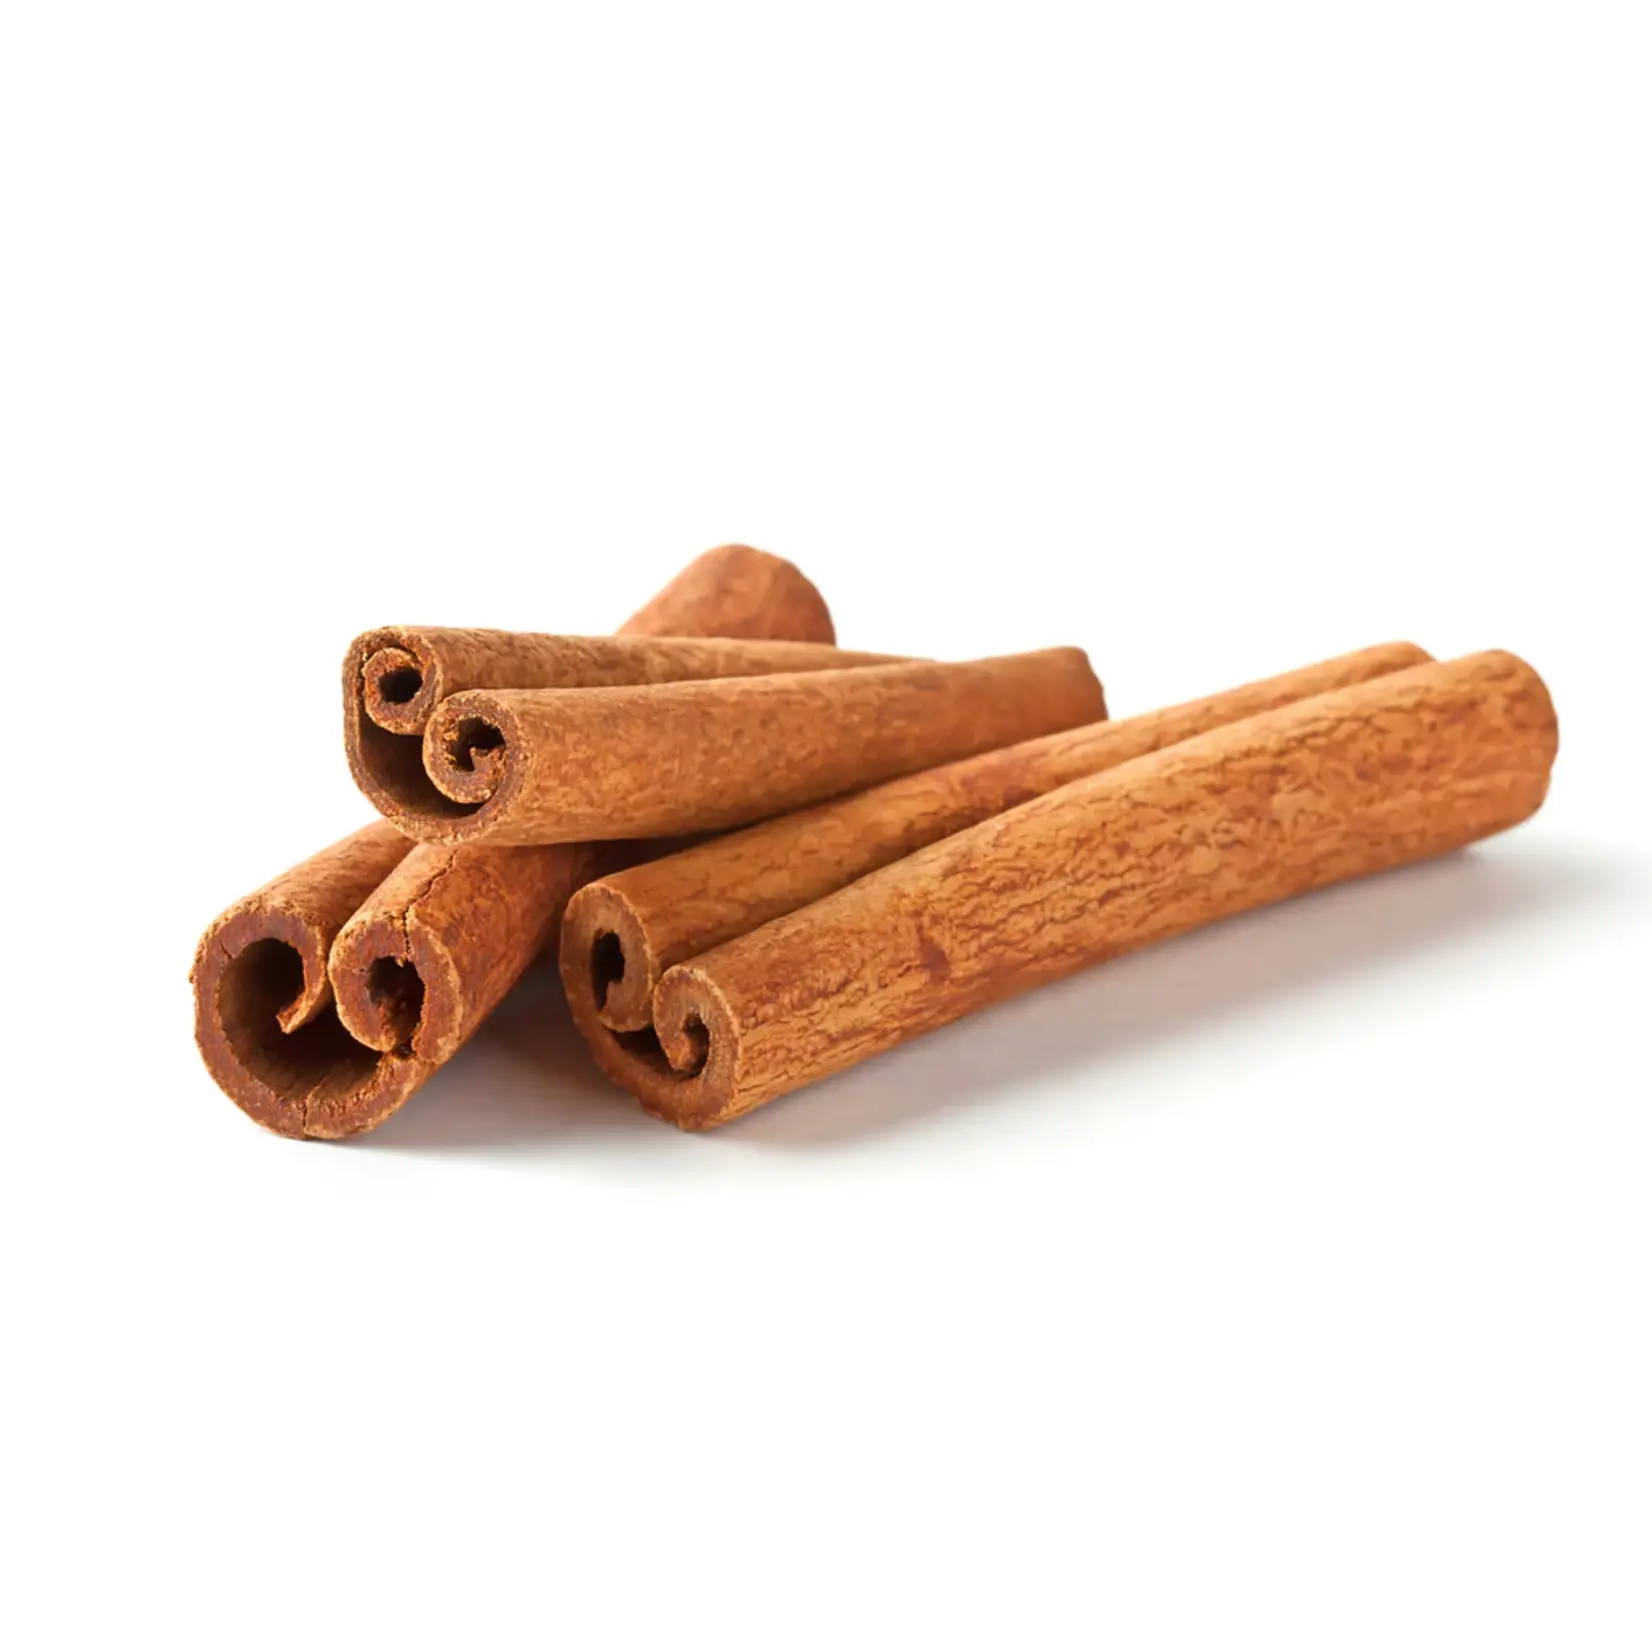 Cinnamon bark tubes